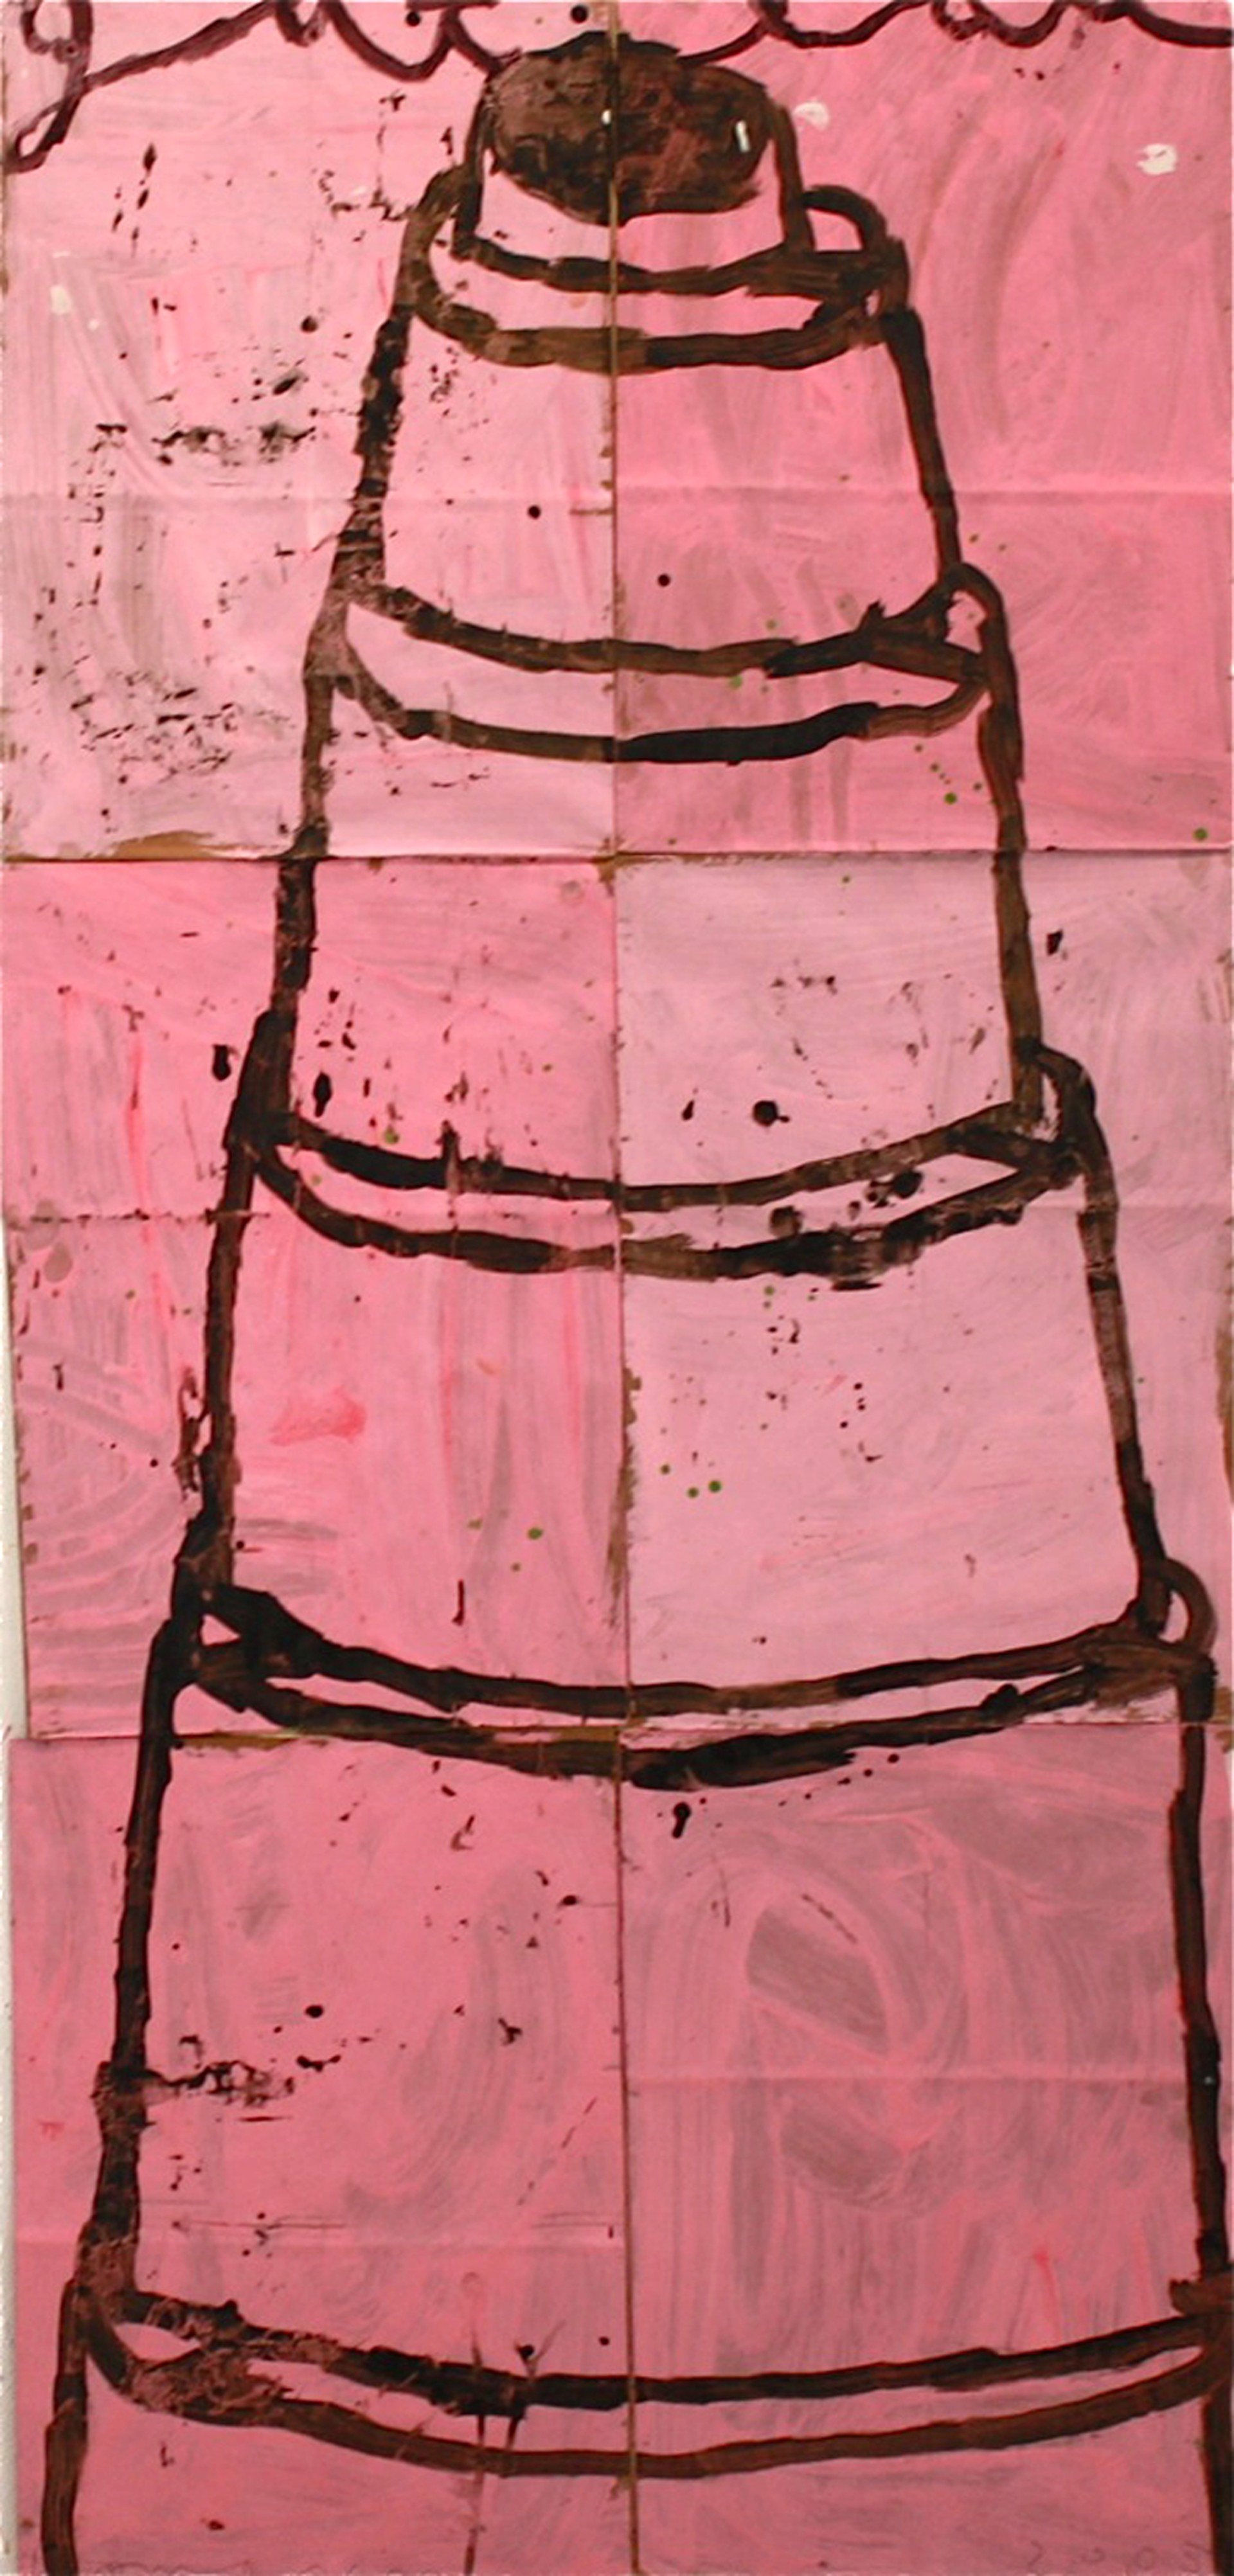 Stacked Cake (Brown on Pink) by Gary Komarin